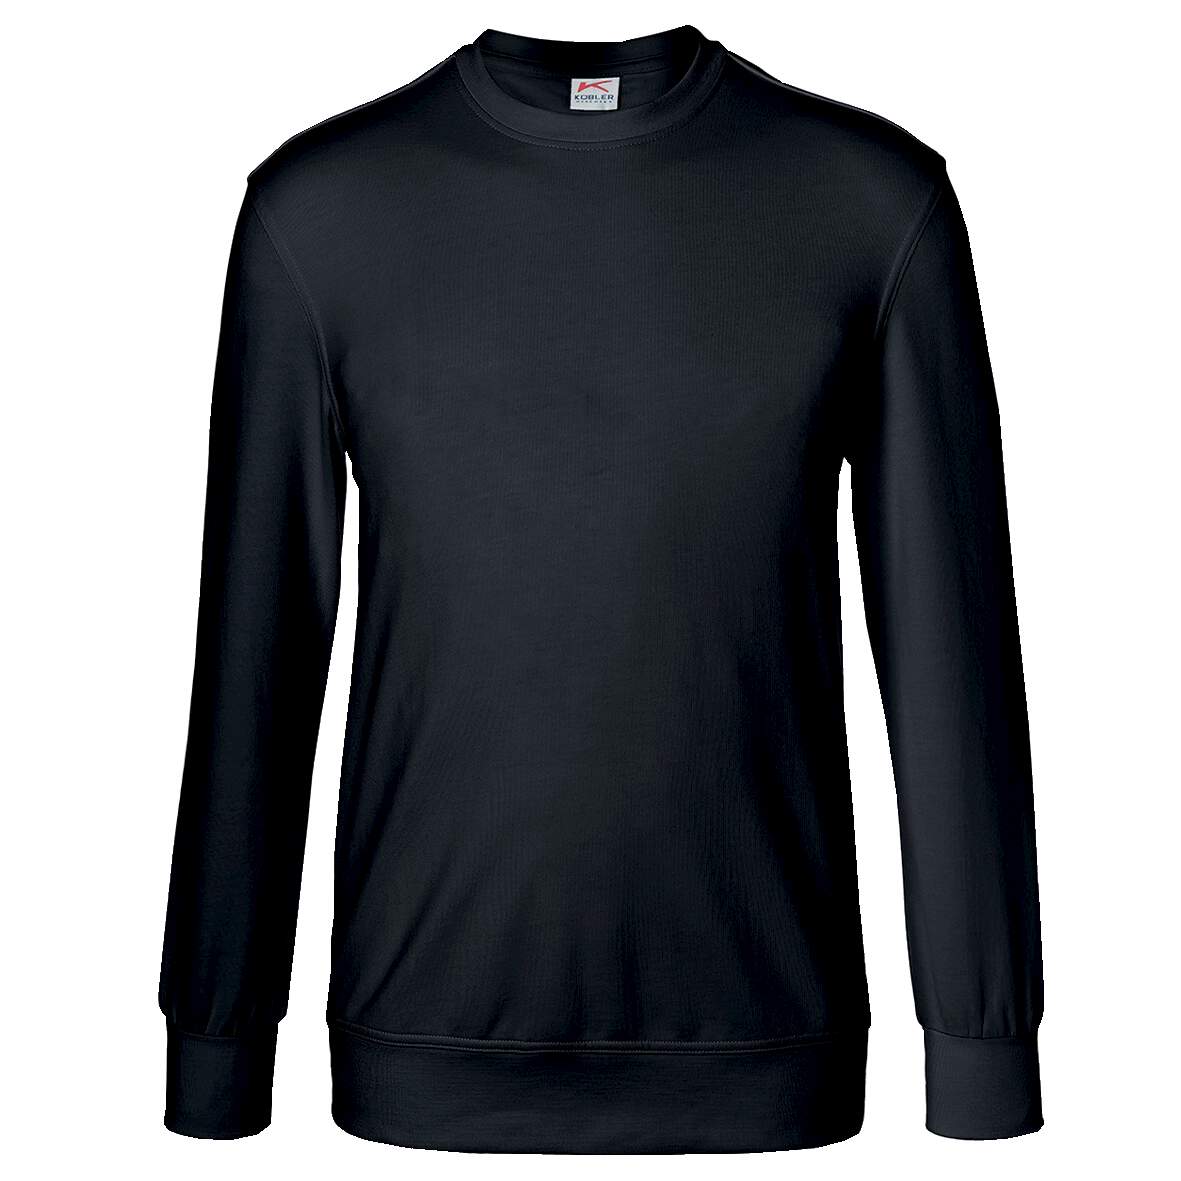 1253922 - Sweatshirt schwarz Gr.XL 